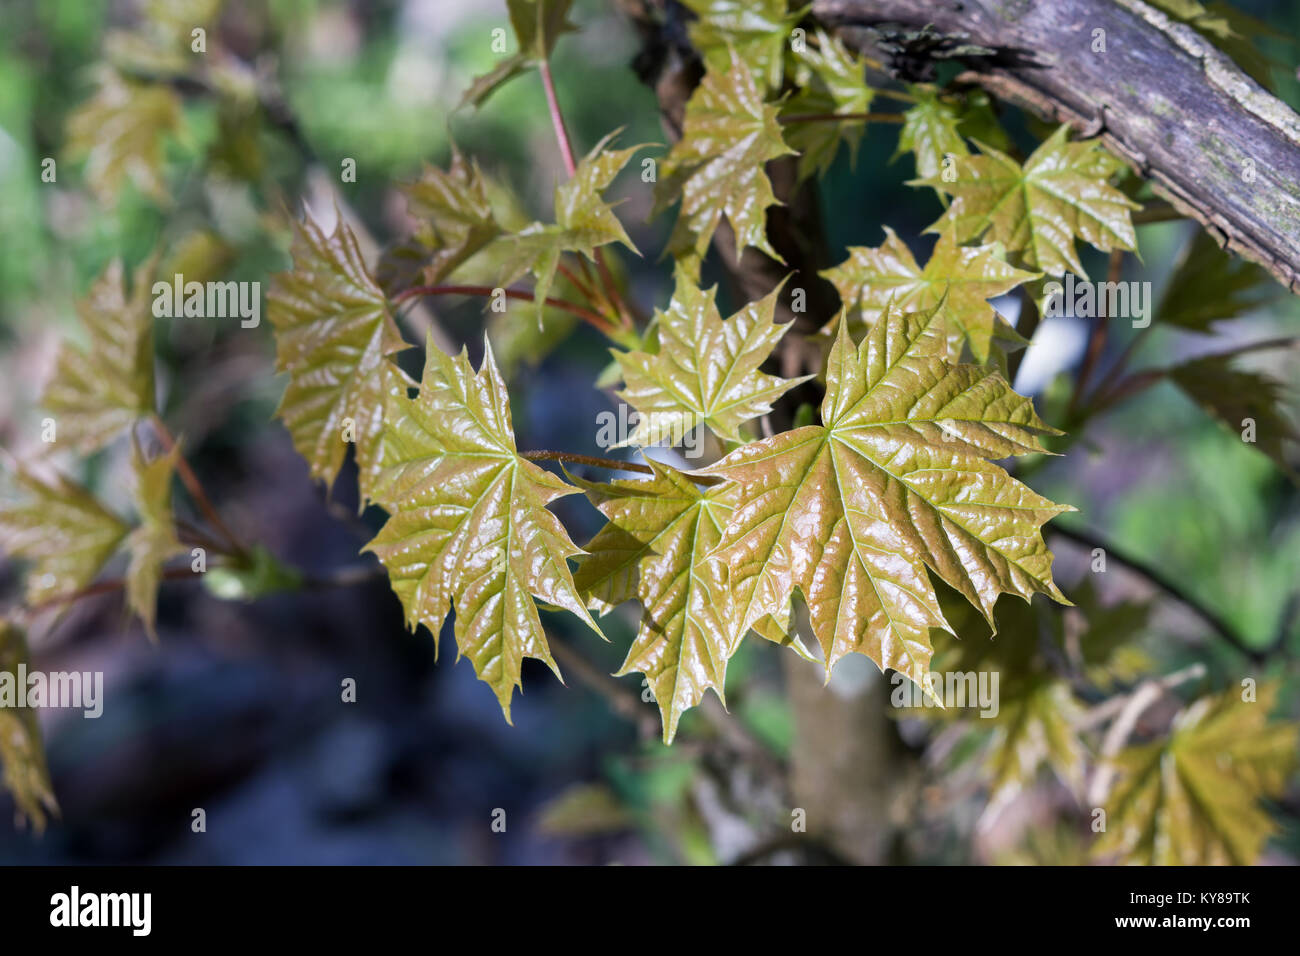 Des très jeunes feuilles d'érable (Acer platanoides) en forêt au printemps. Les feuilles sont mis en lumière par le soleil. Fond naturel. Focus sélectif. Banque D'Images